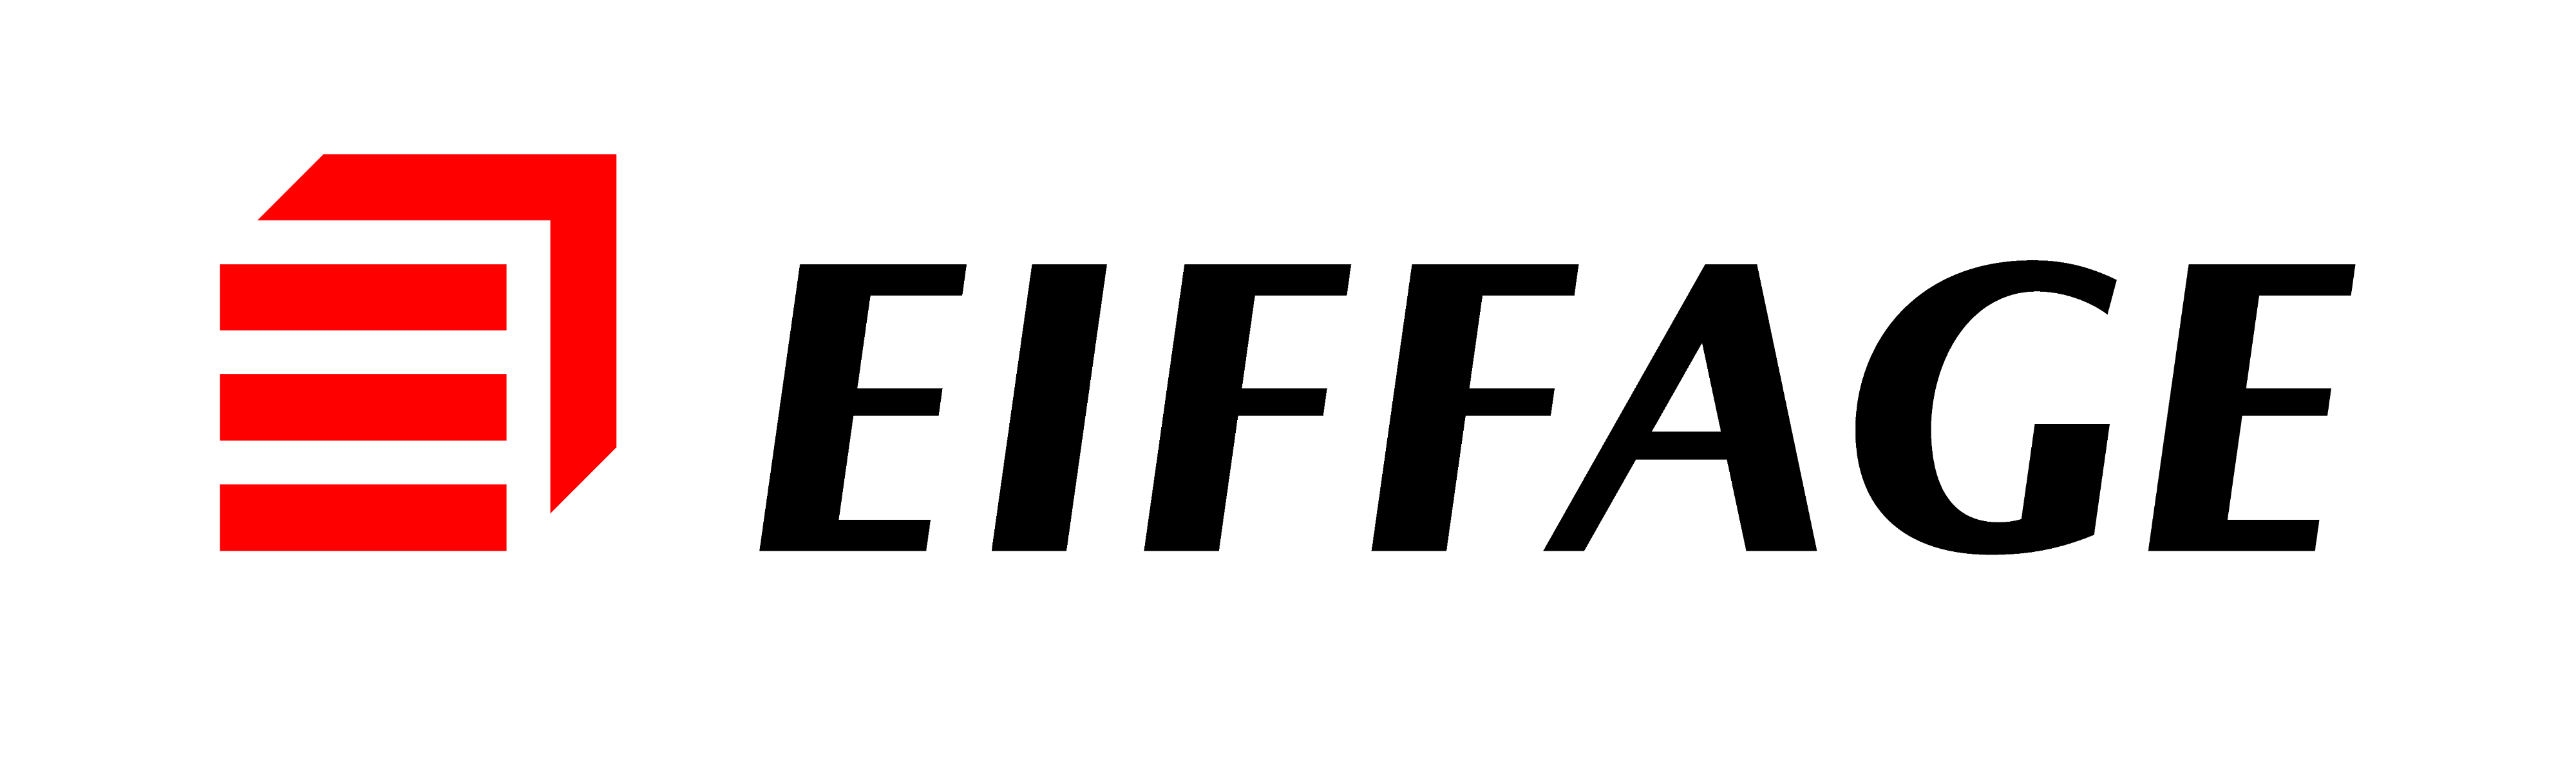 Eiffage Logo - Eiffage Logo | LOGOSURFER.COM